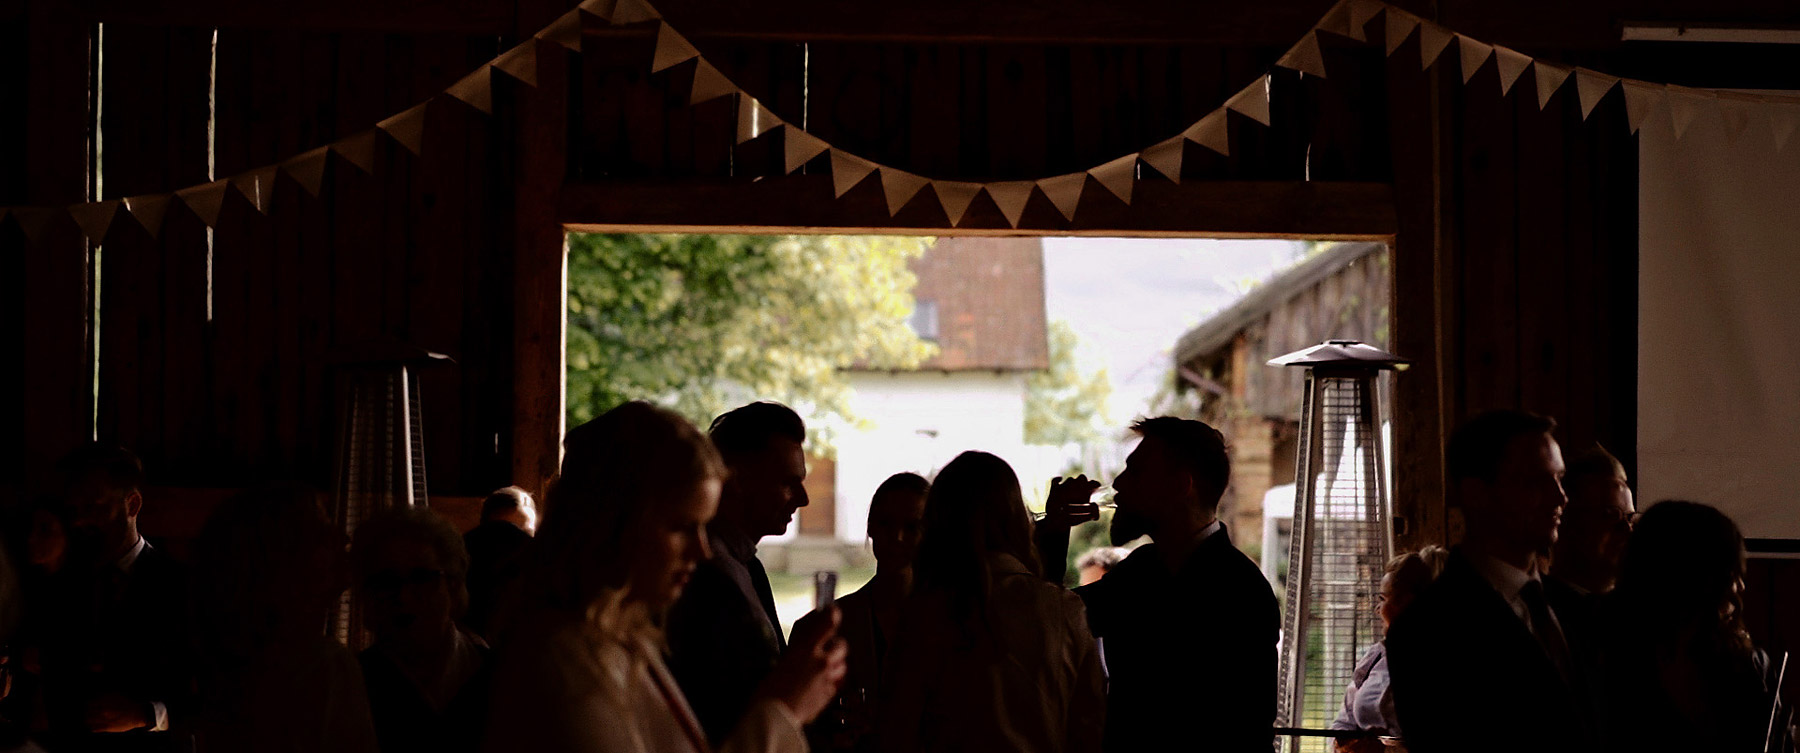 wesele w stodole kawkowo film ślubny